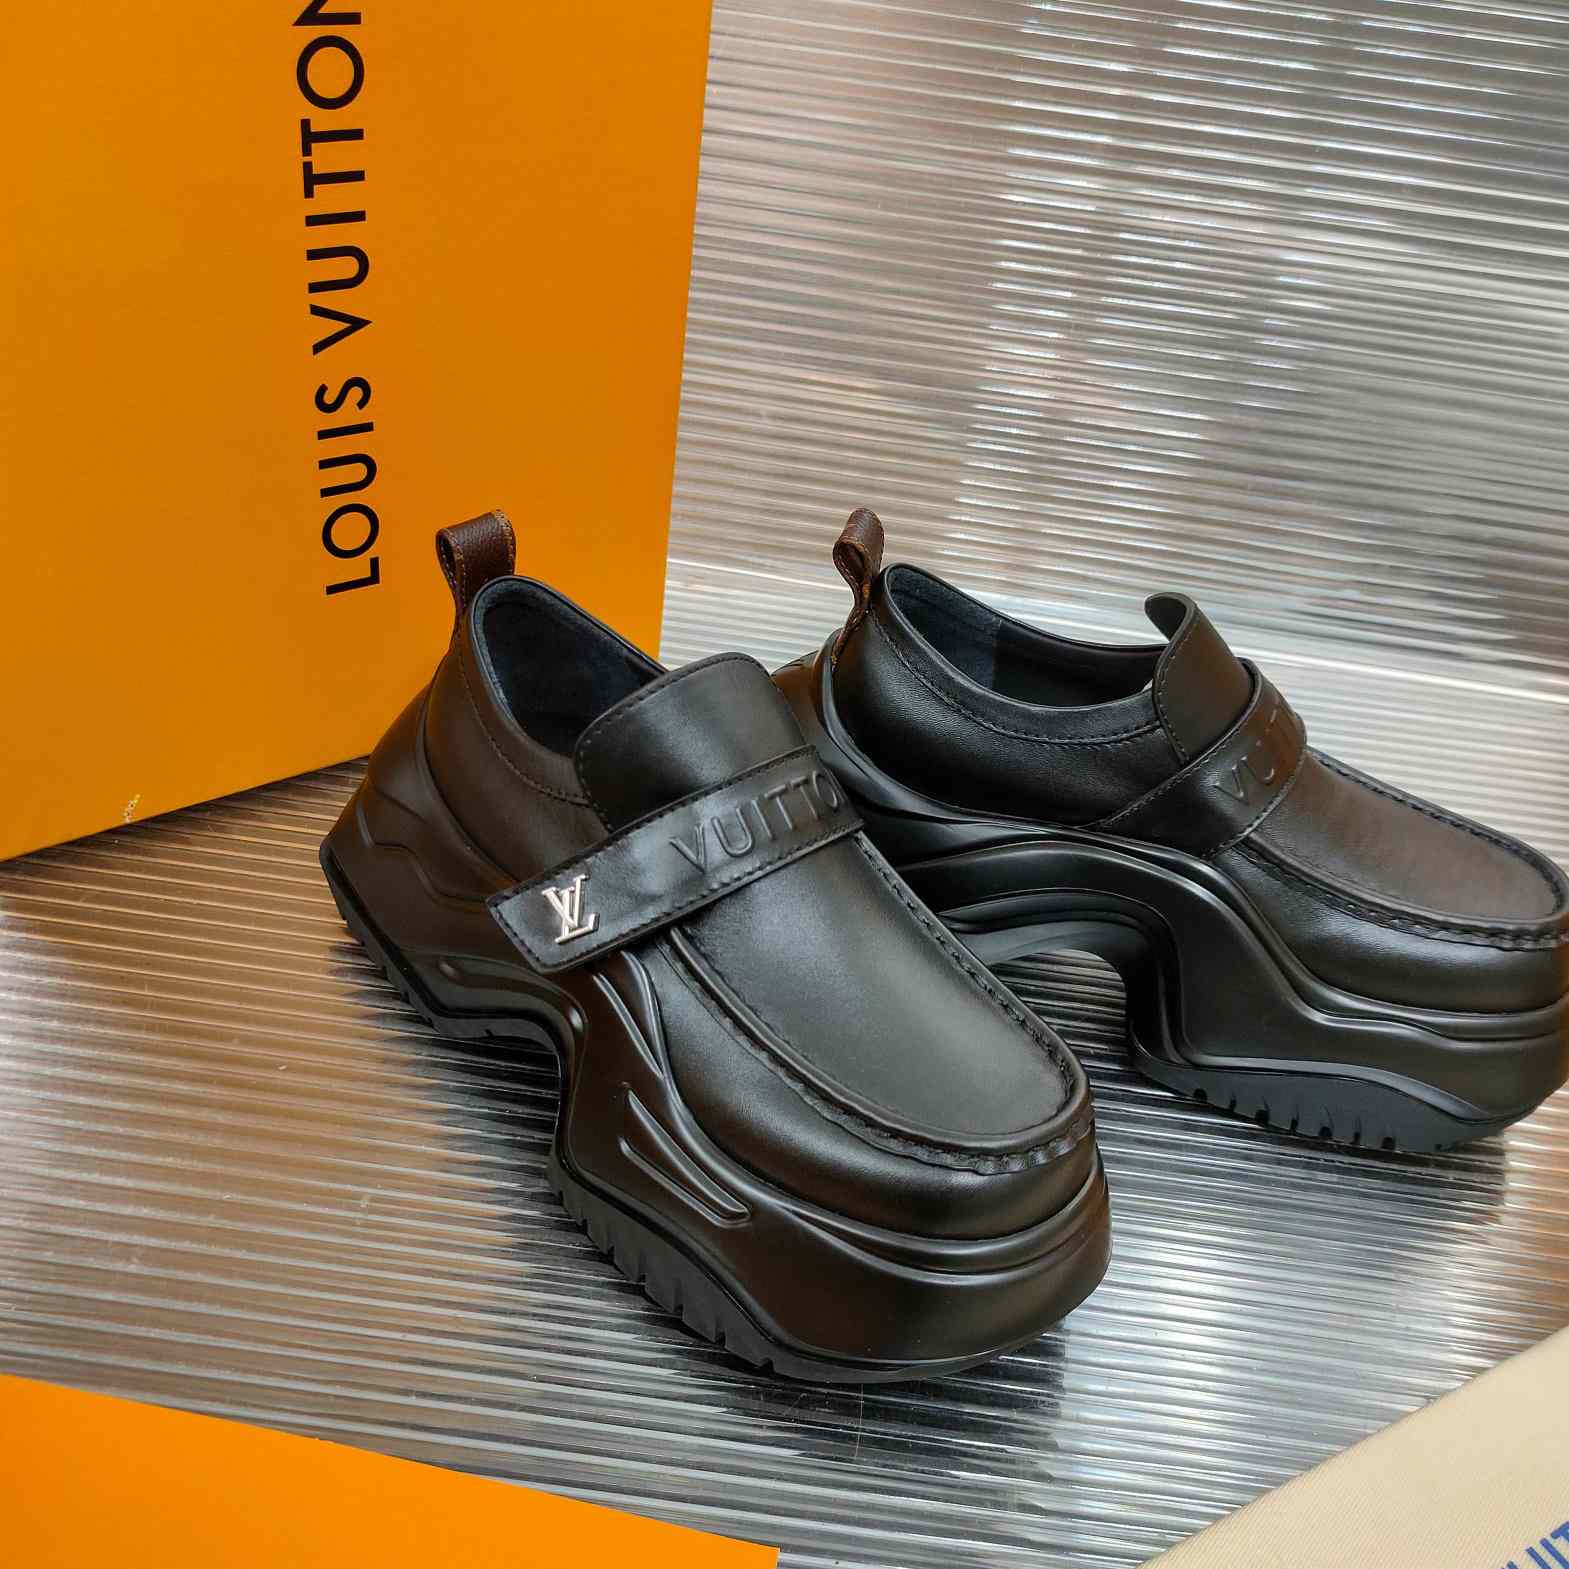 LV Archlight 2.0 Platform Loafer - Shoes 1ABIJS